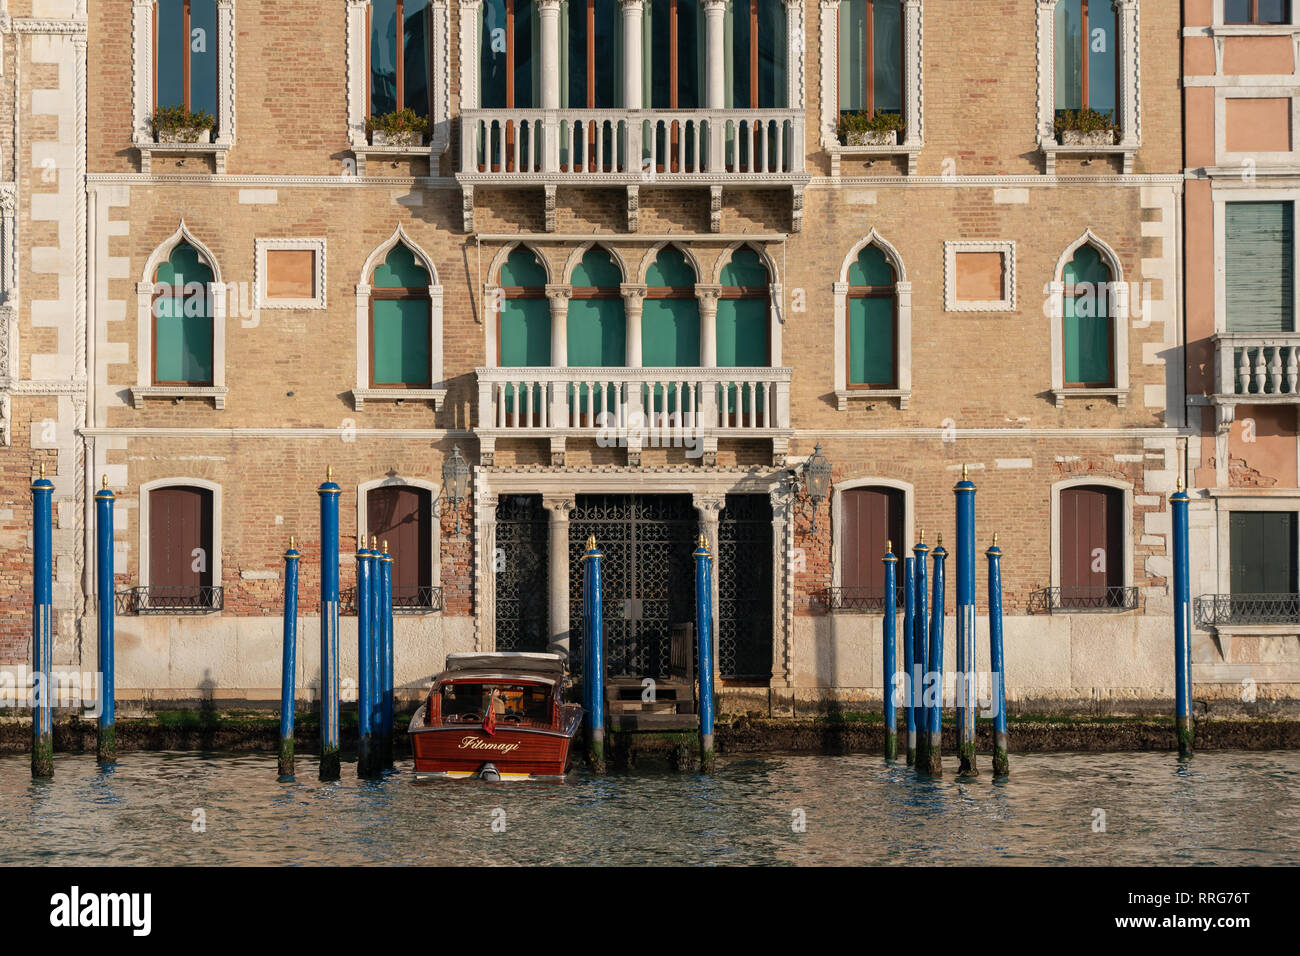 Viste generali di Venezia. Da una serie di foto di viaggio in Italia. Foto Data: martedì 12 febbraio, 2019. Foto: Roger Garfield/Alamy Foto Stock